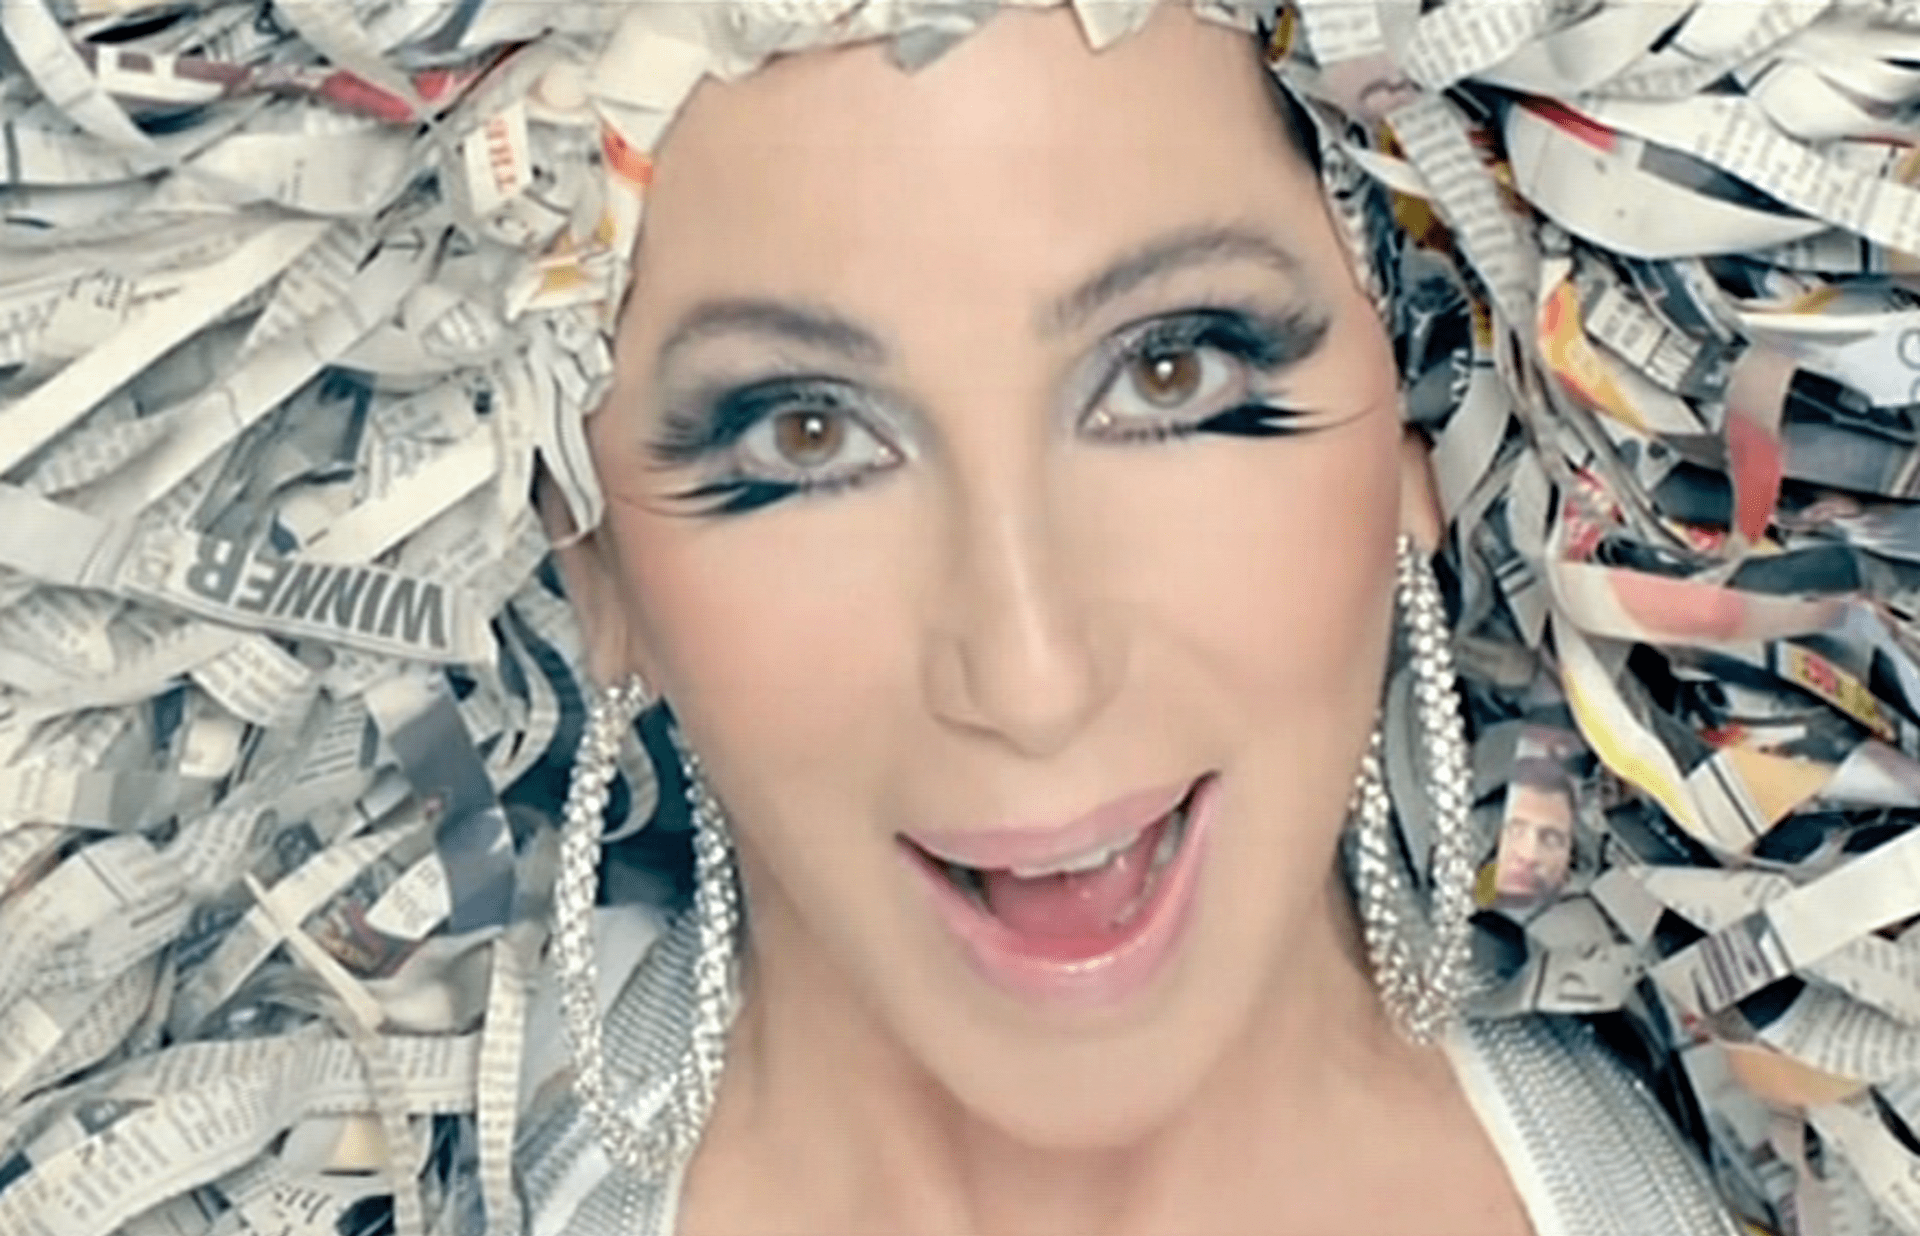 Video VIP zprávy: Poznáte zpěvačku Cher?